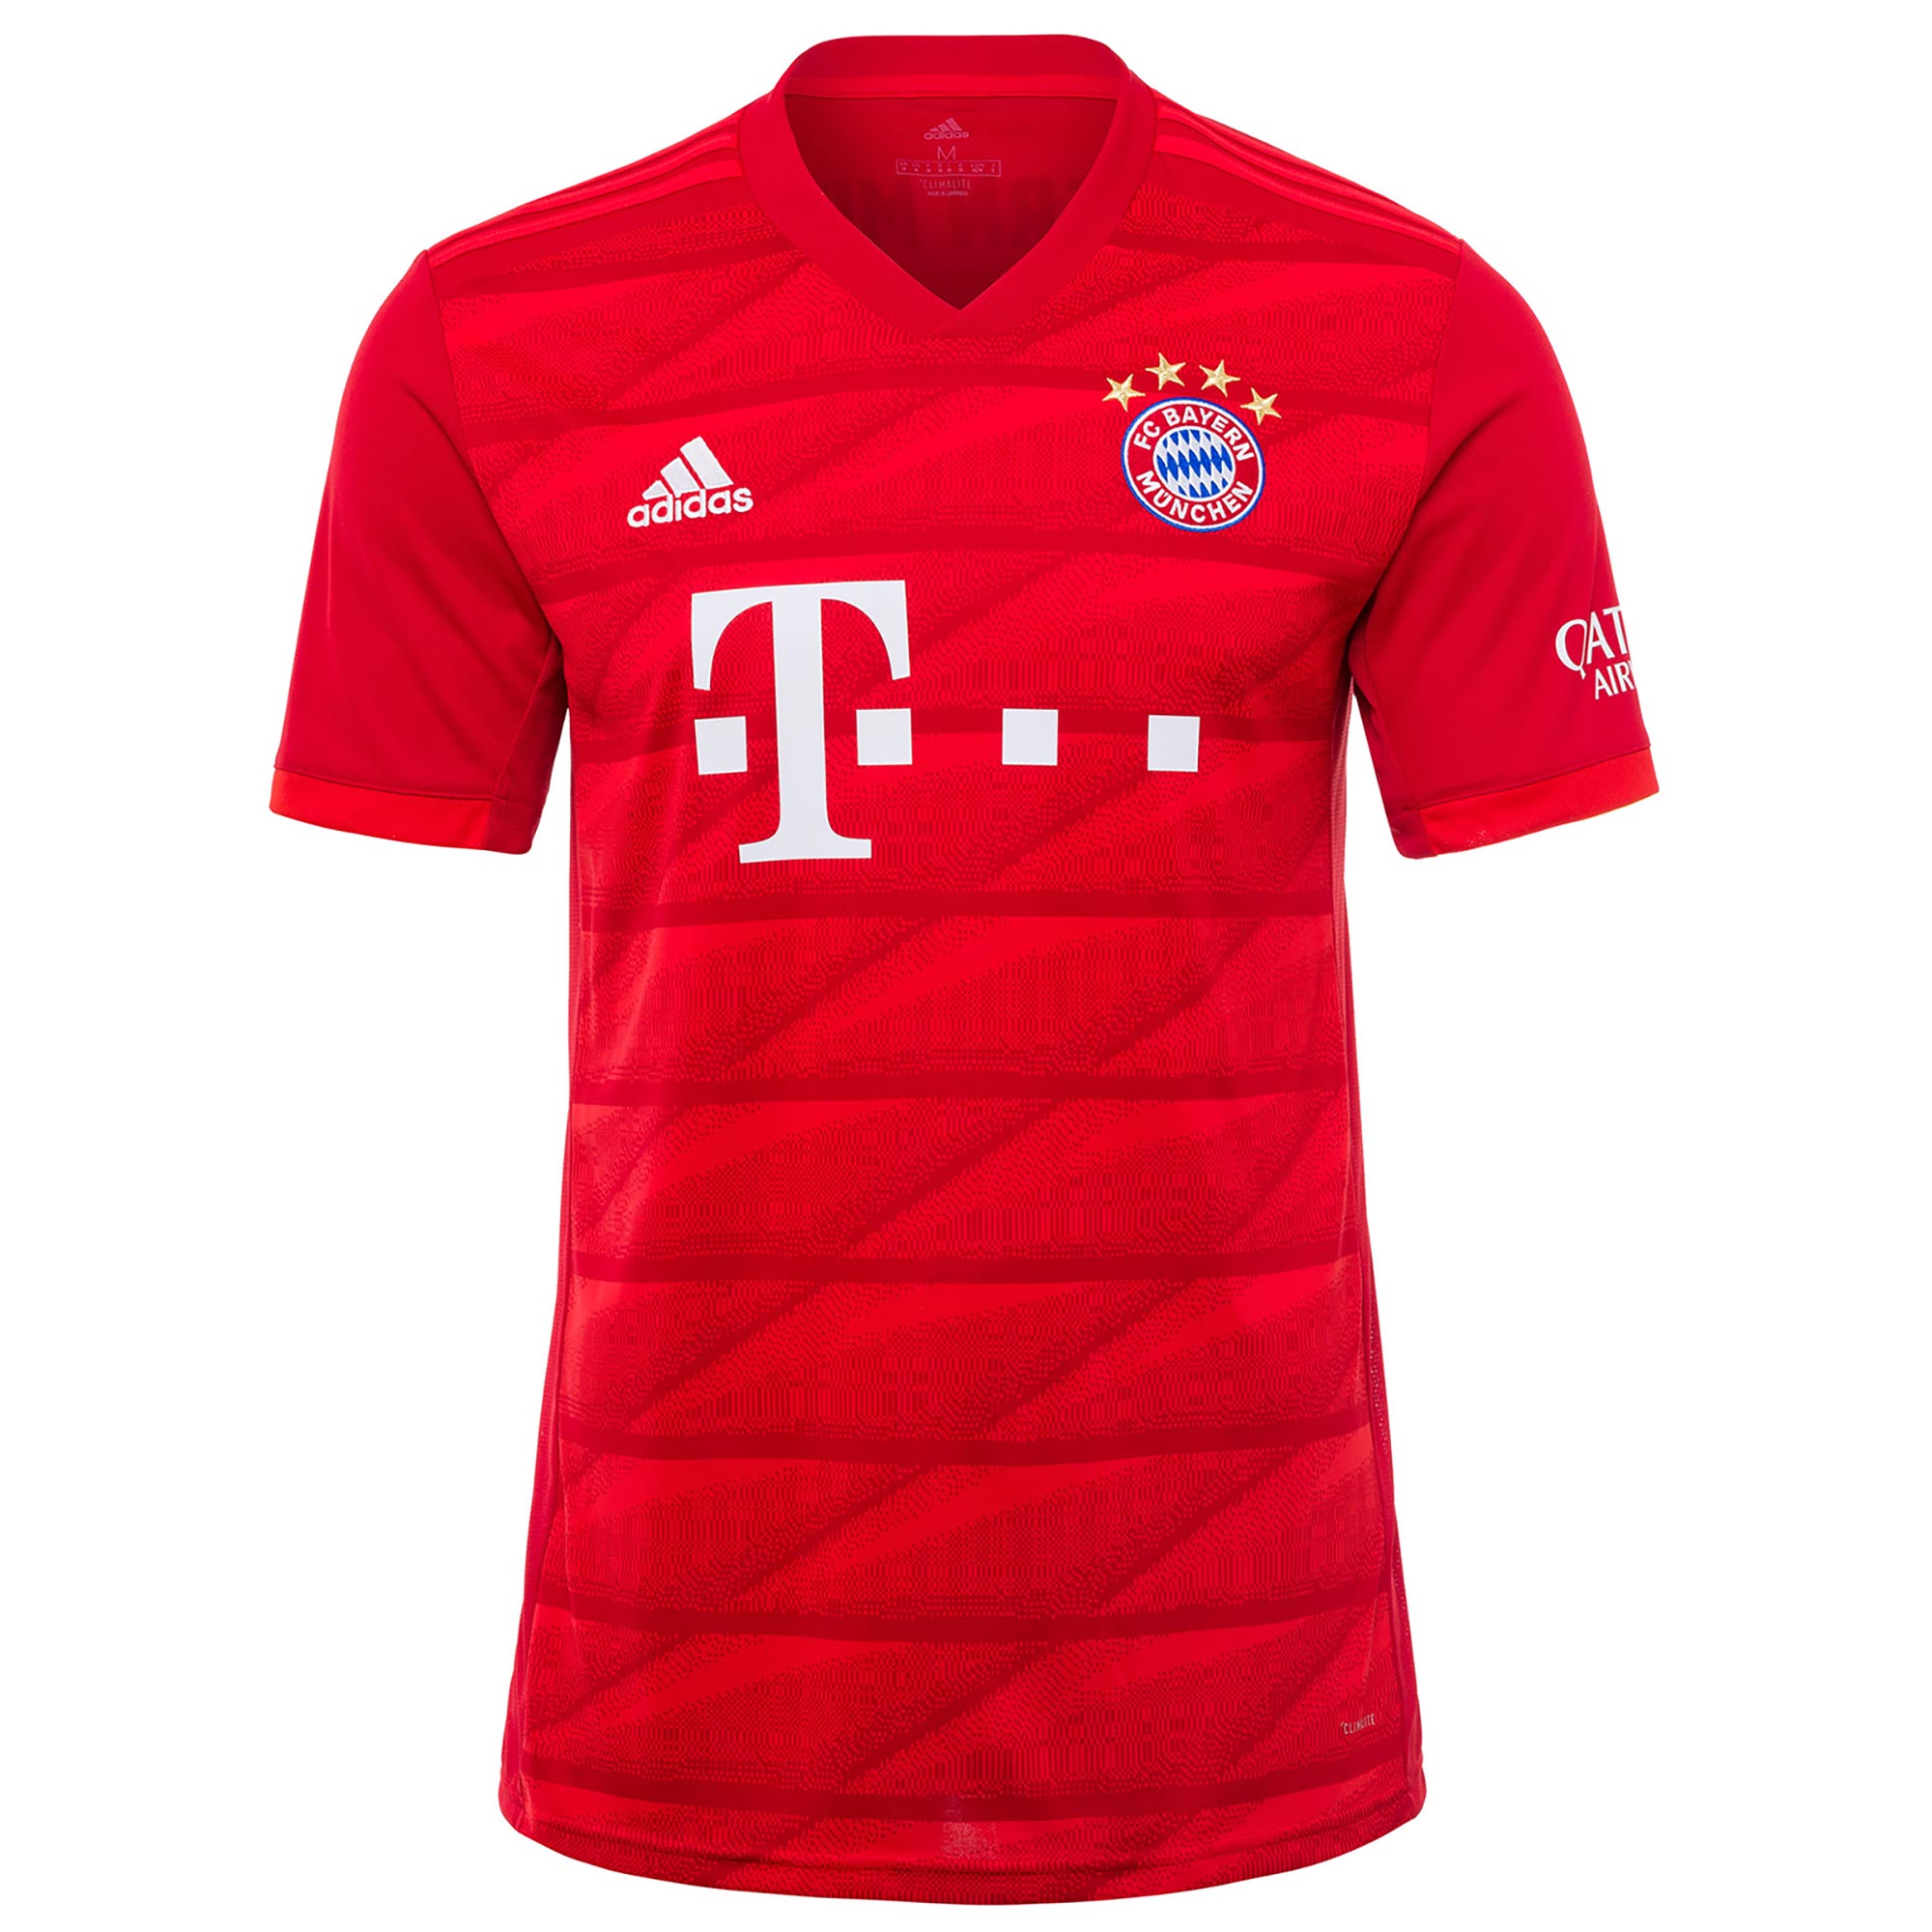 adidas Official Kids FC Bayern Munich Home Football Soccer Shirt Jersey ...